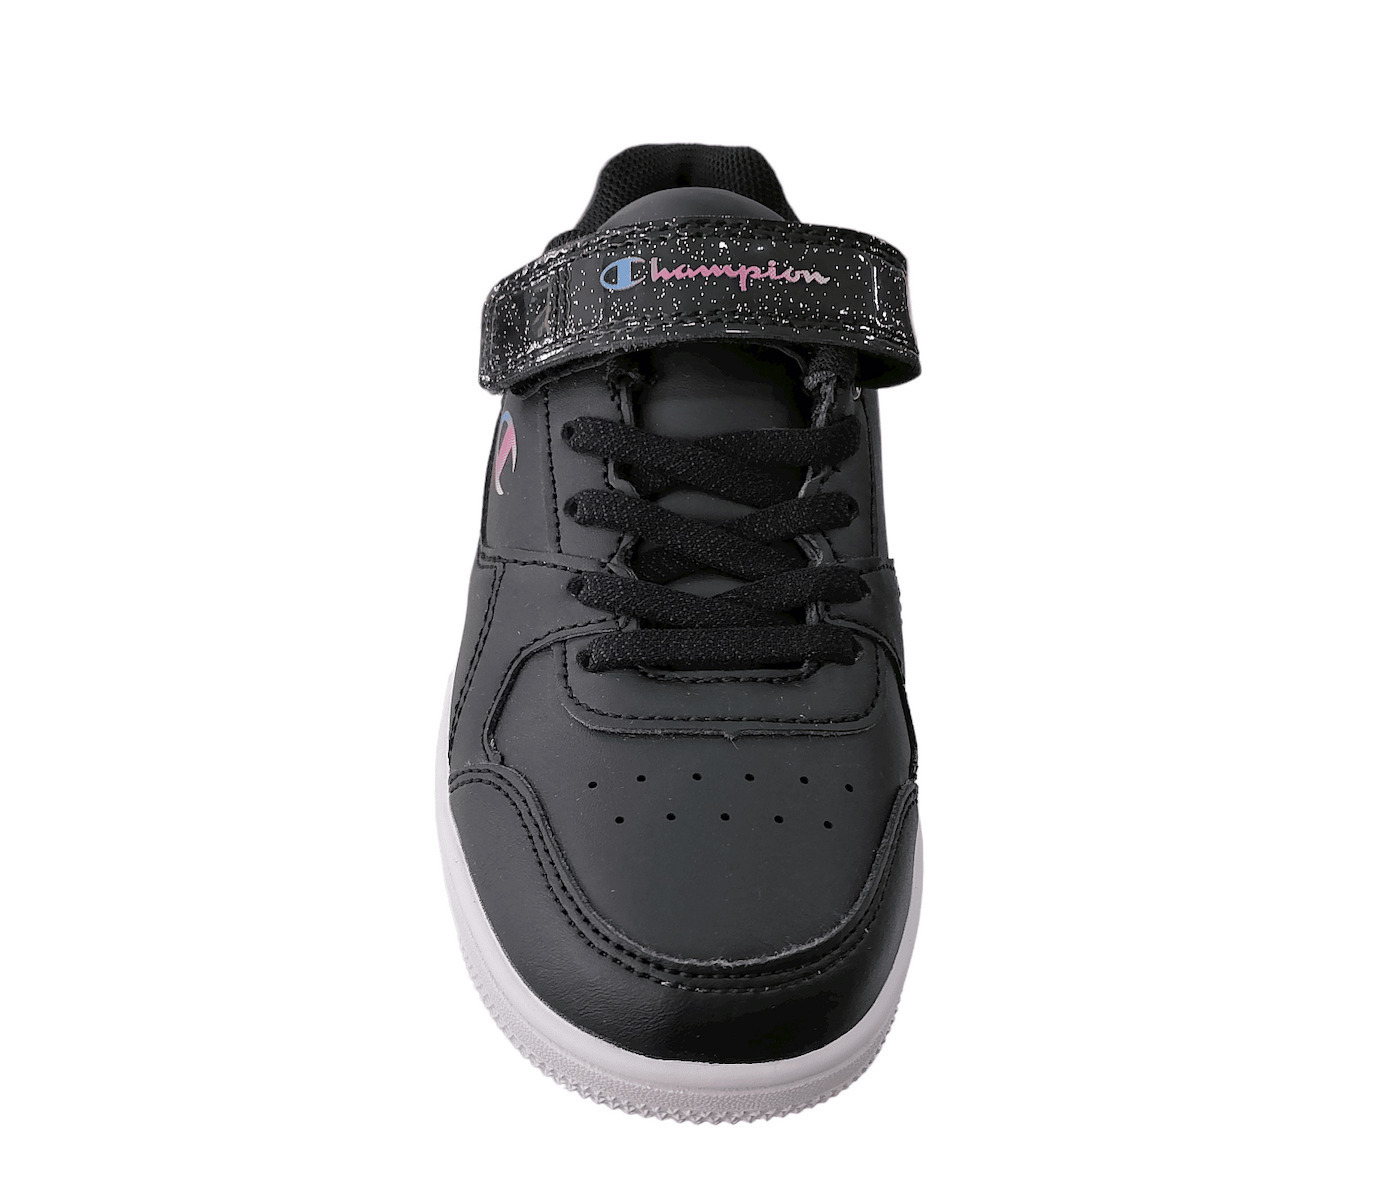 Παπούτσια Rebound Παιδικά Μπάσκετ Low G S32491-KK006 Ps Champion Μαύρα Αθλητικά